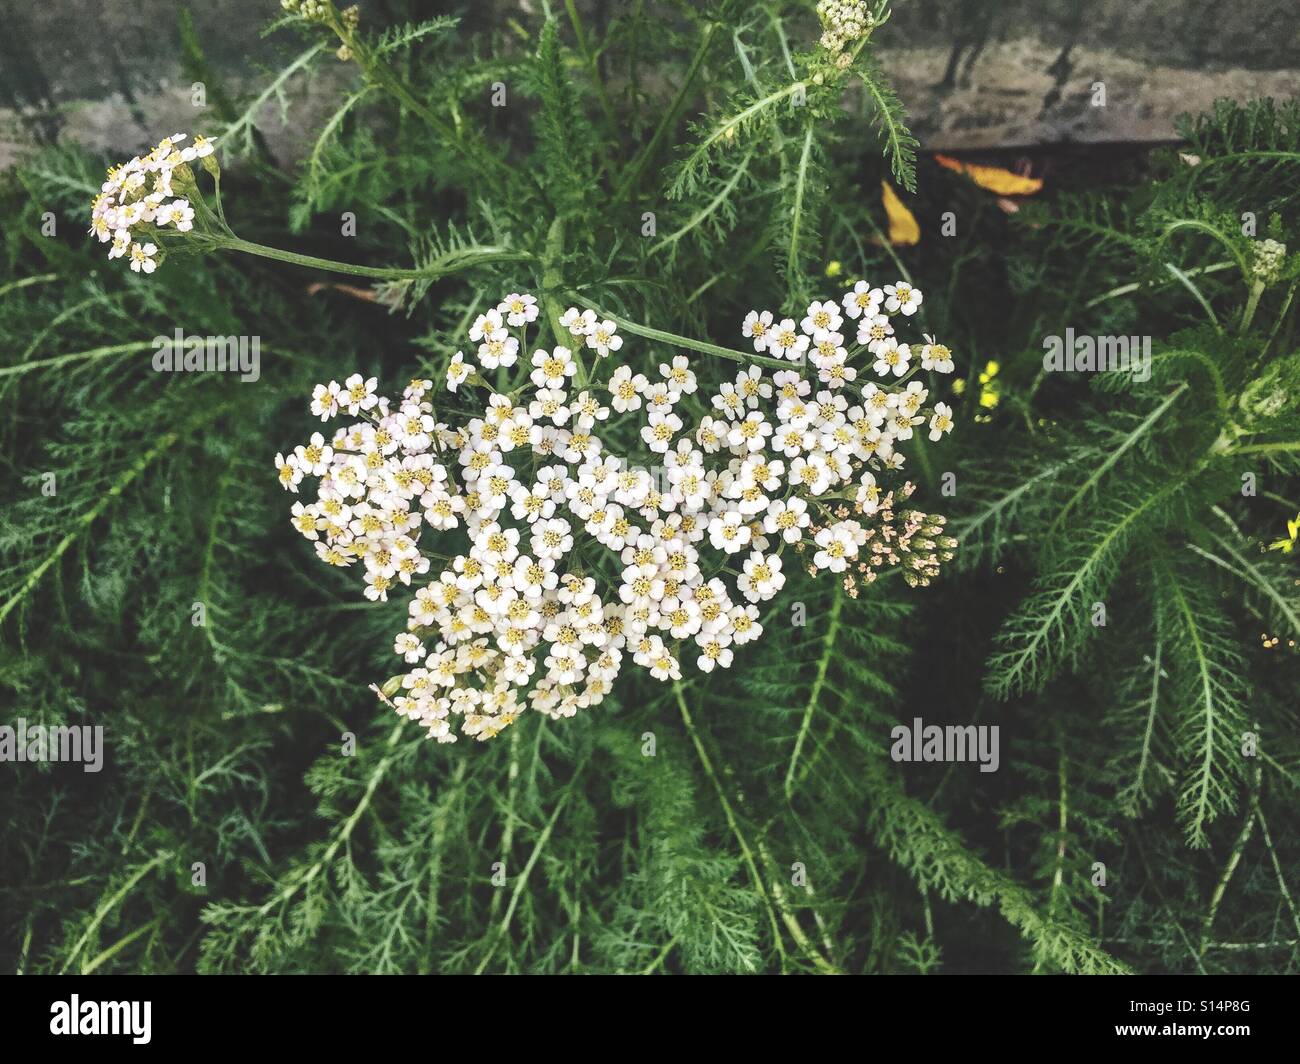 Yarrow flowers Stock Photo